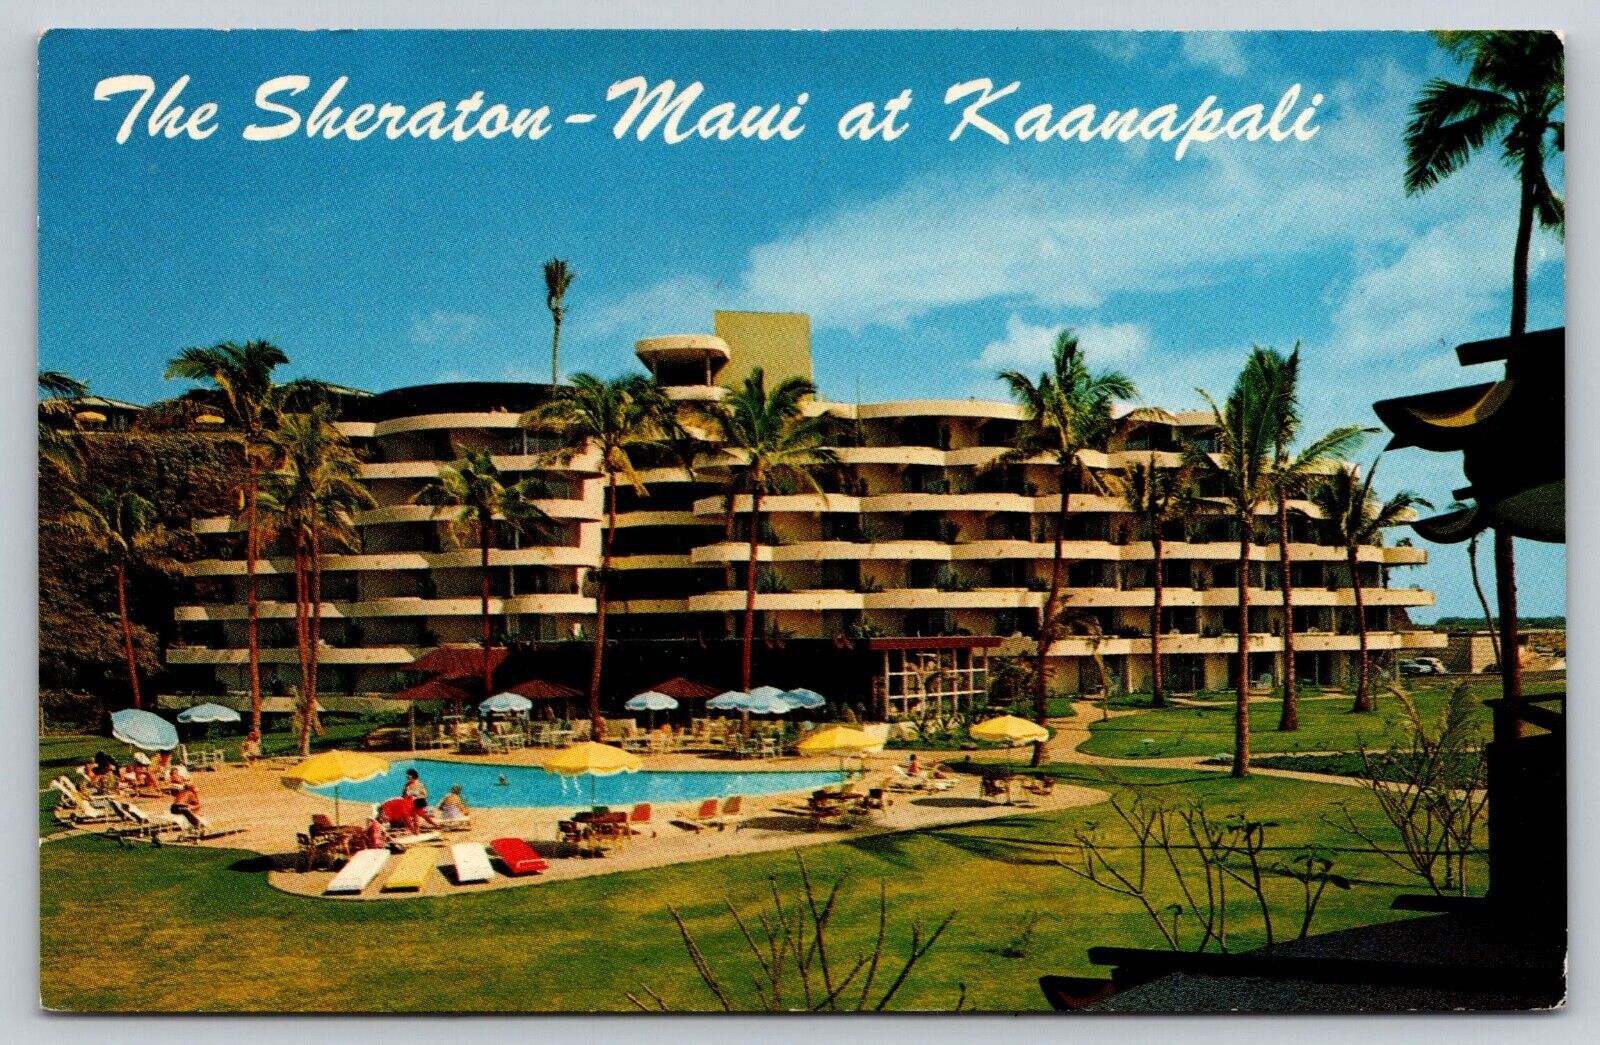 Postcard 1964 The Sheraton Hotel Maui at Kaanapali Hawaii